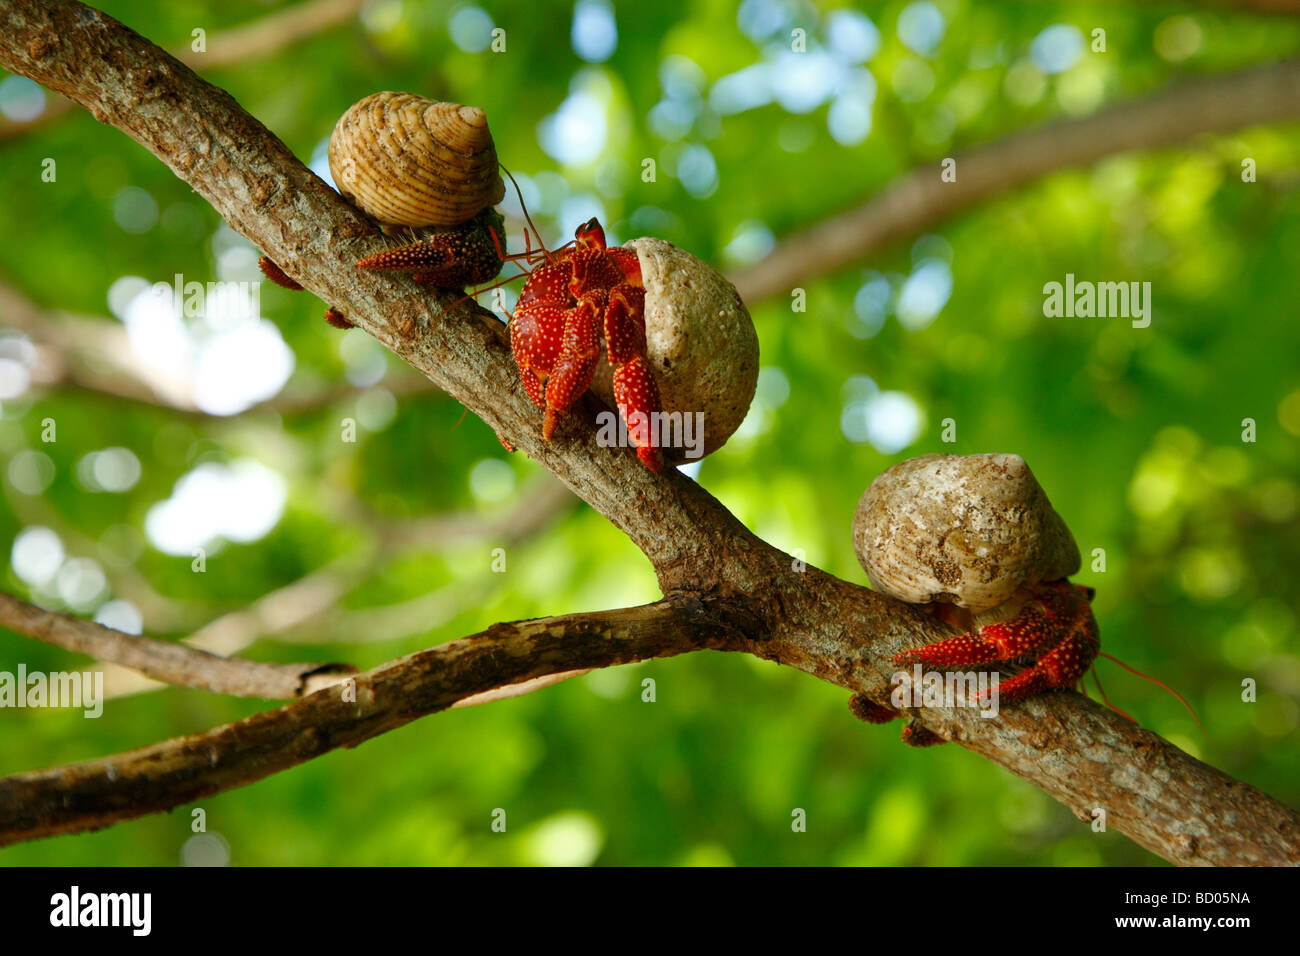 Strawberry land hermit crabs, Fakarava, Tuamotu Archipelago, French Polynesia Stock Photo